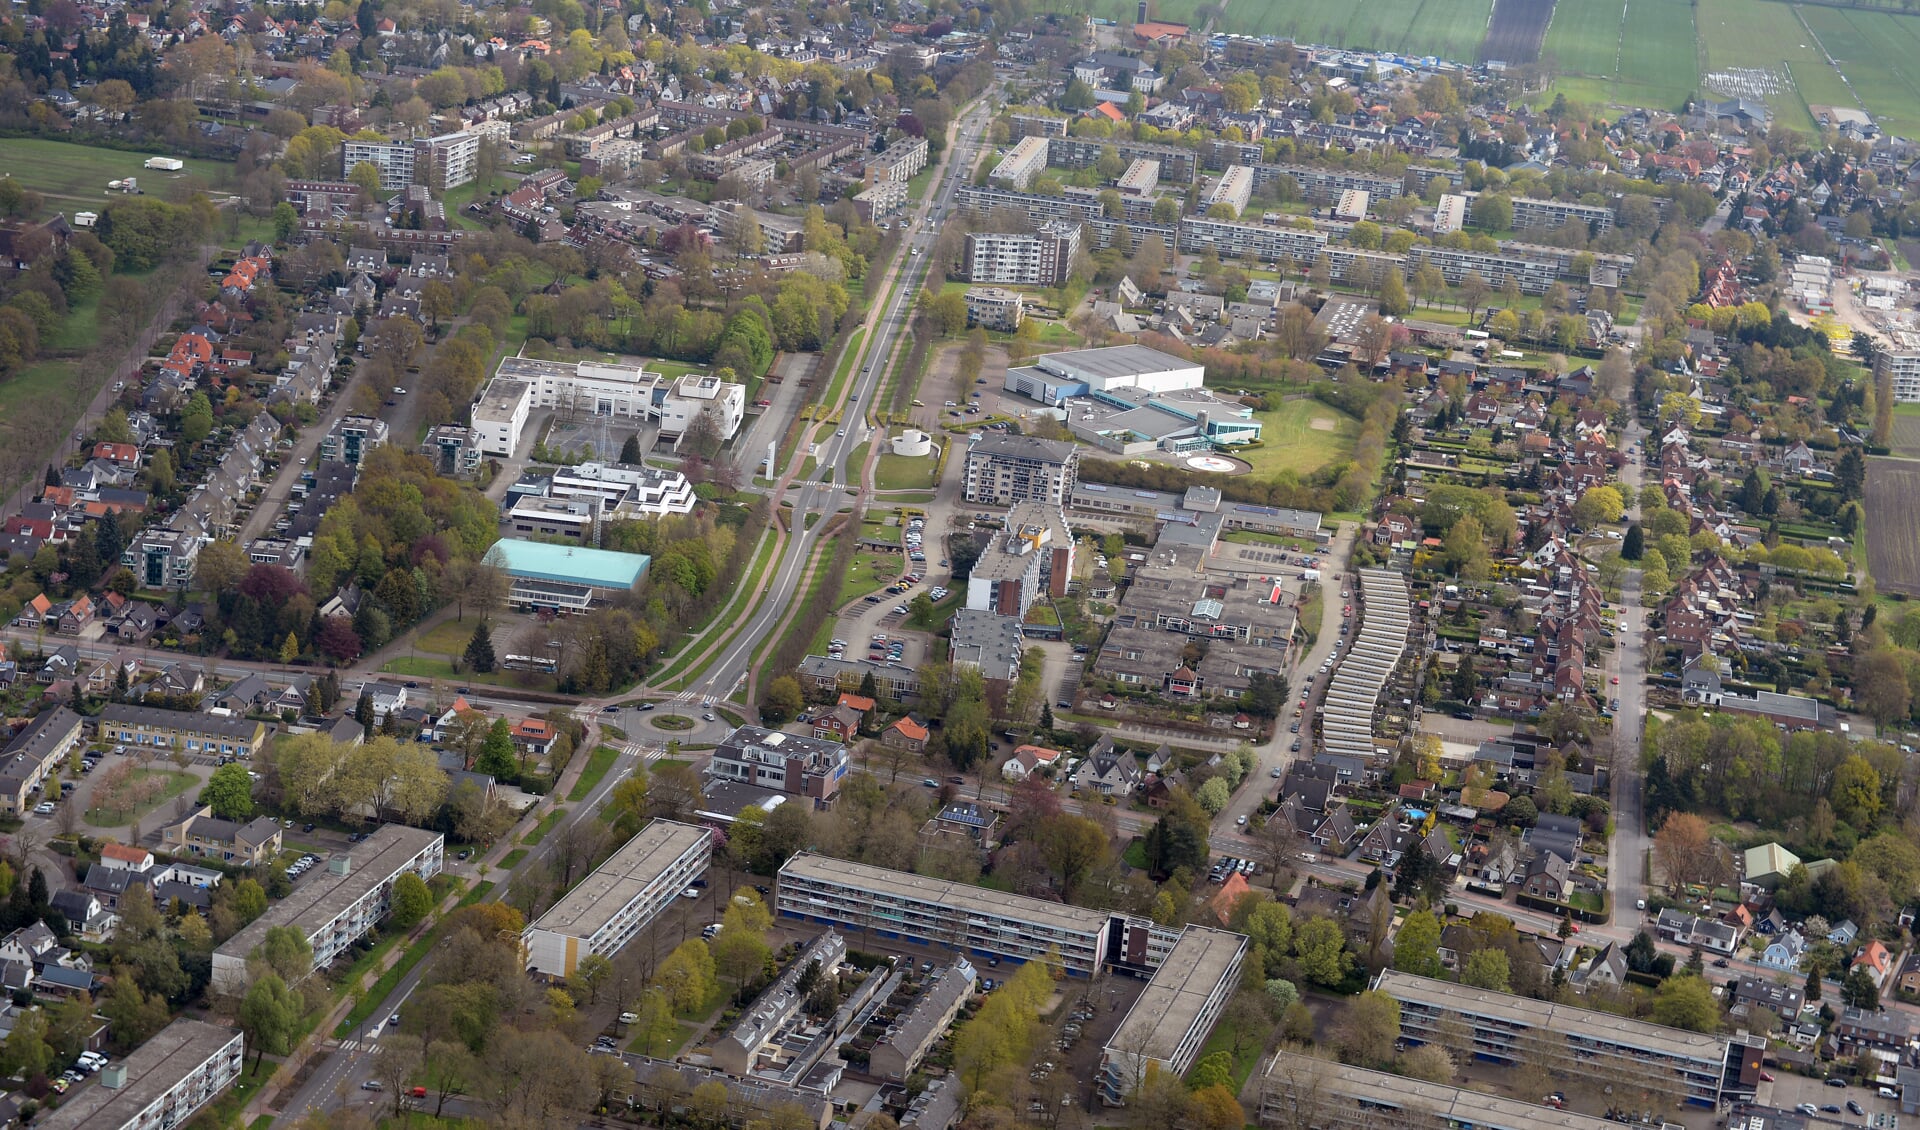 Luchtfoto van het Dalweggebied waarvoor het college een visie heeft ontwikkeld. De planvorming is weer een stapje verder met suggesties voor meer functies.